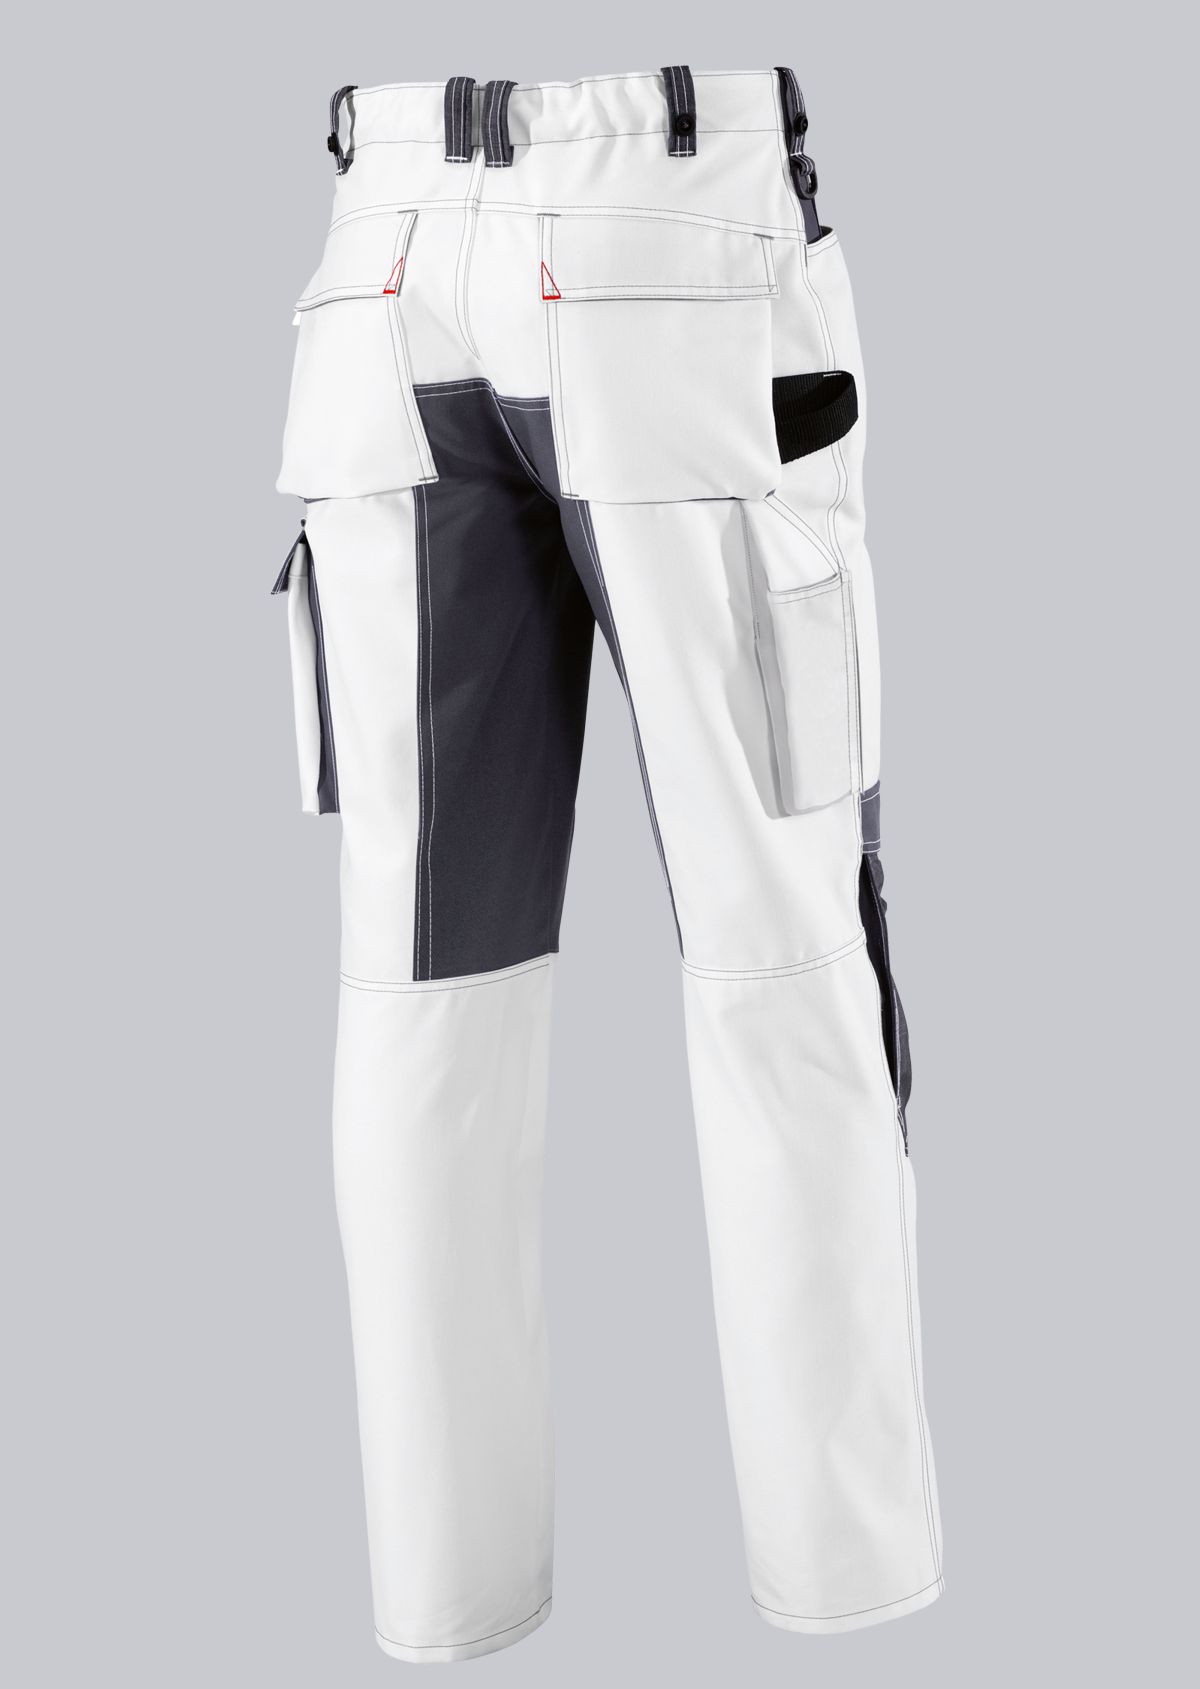 BP® Pantalon de travail résistant avec genouillères